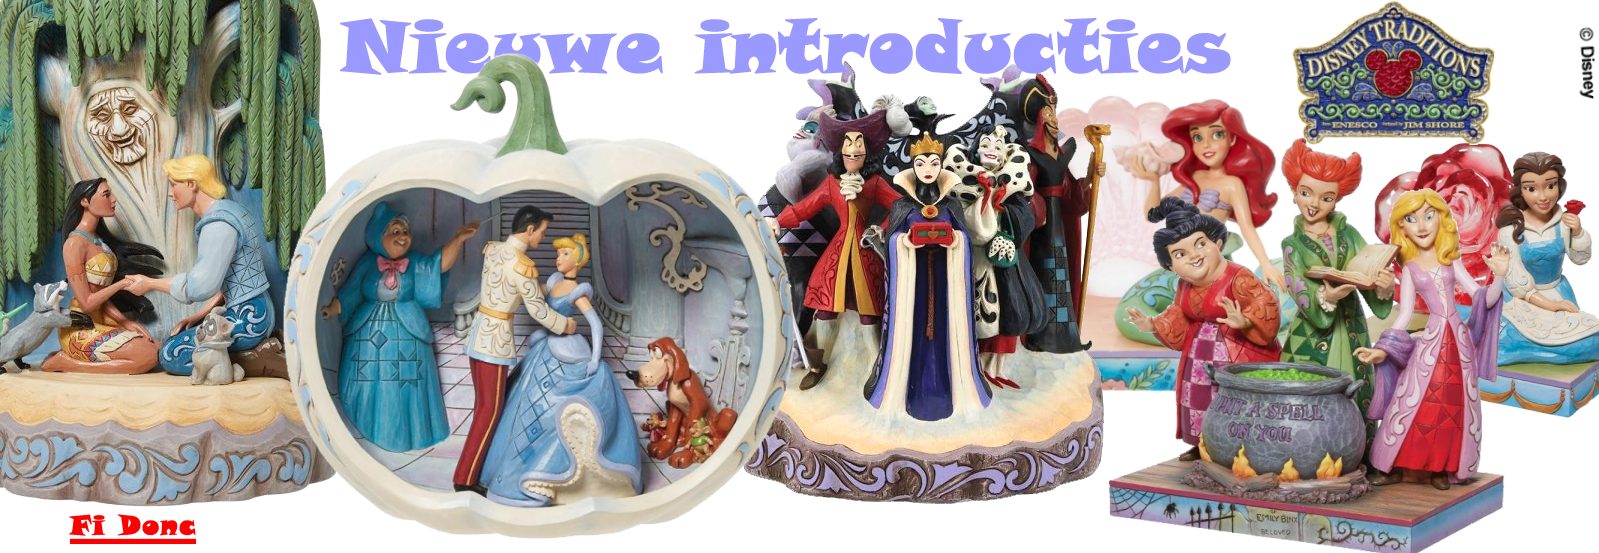 Nieuwe beeldjes Disney Traditions